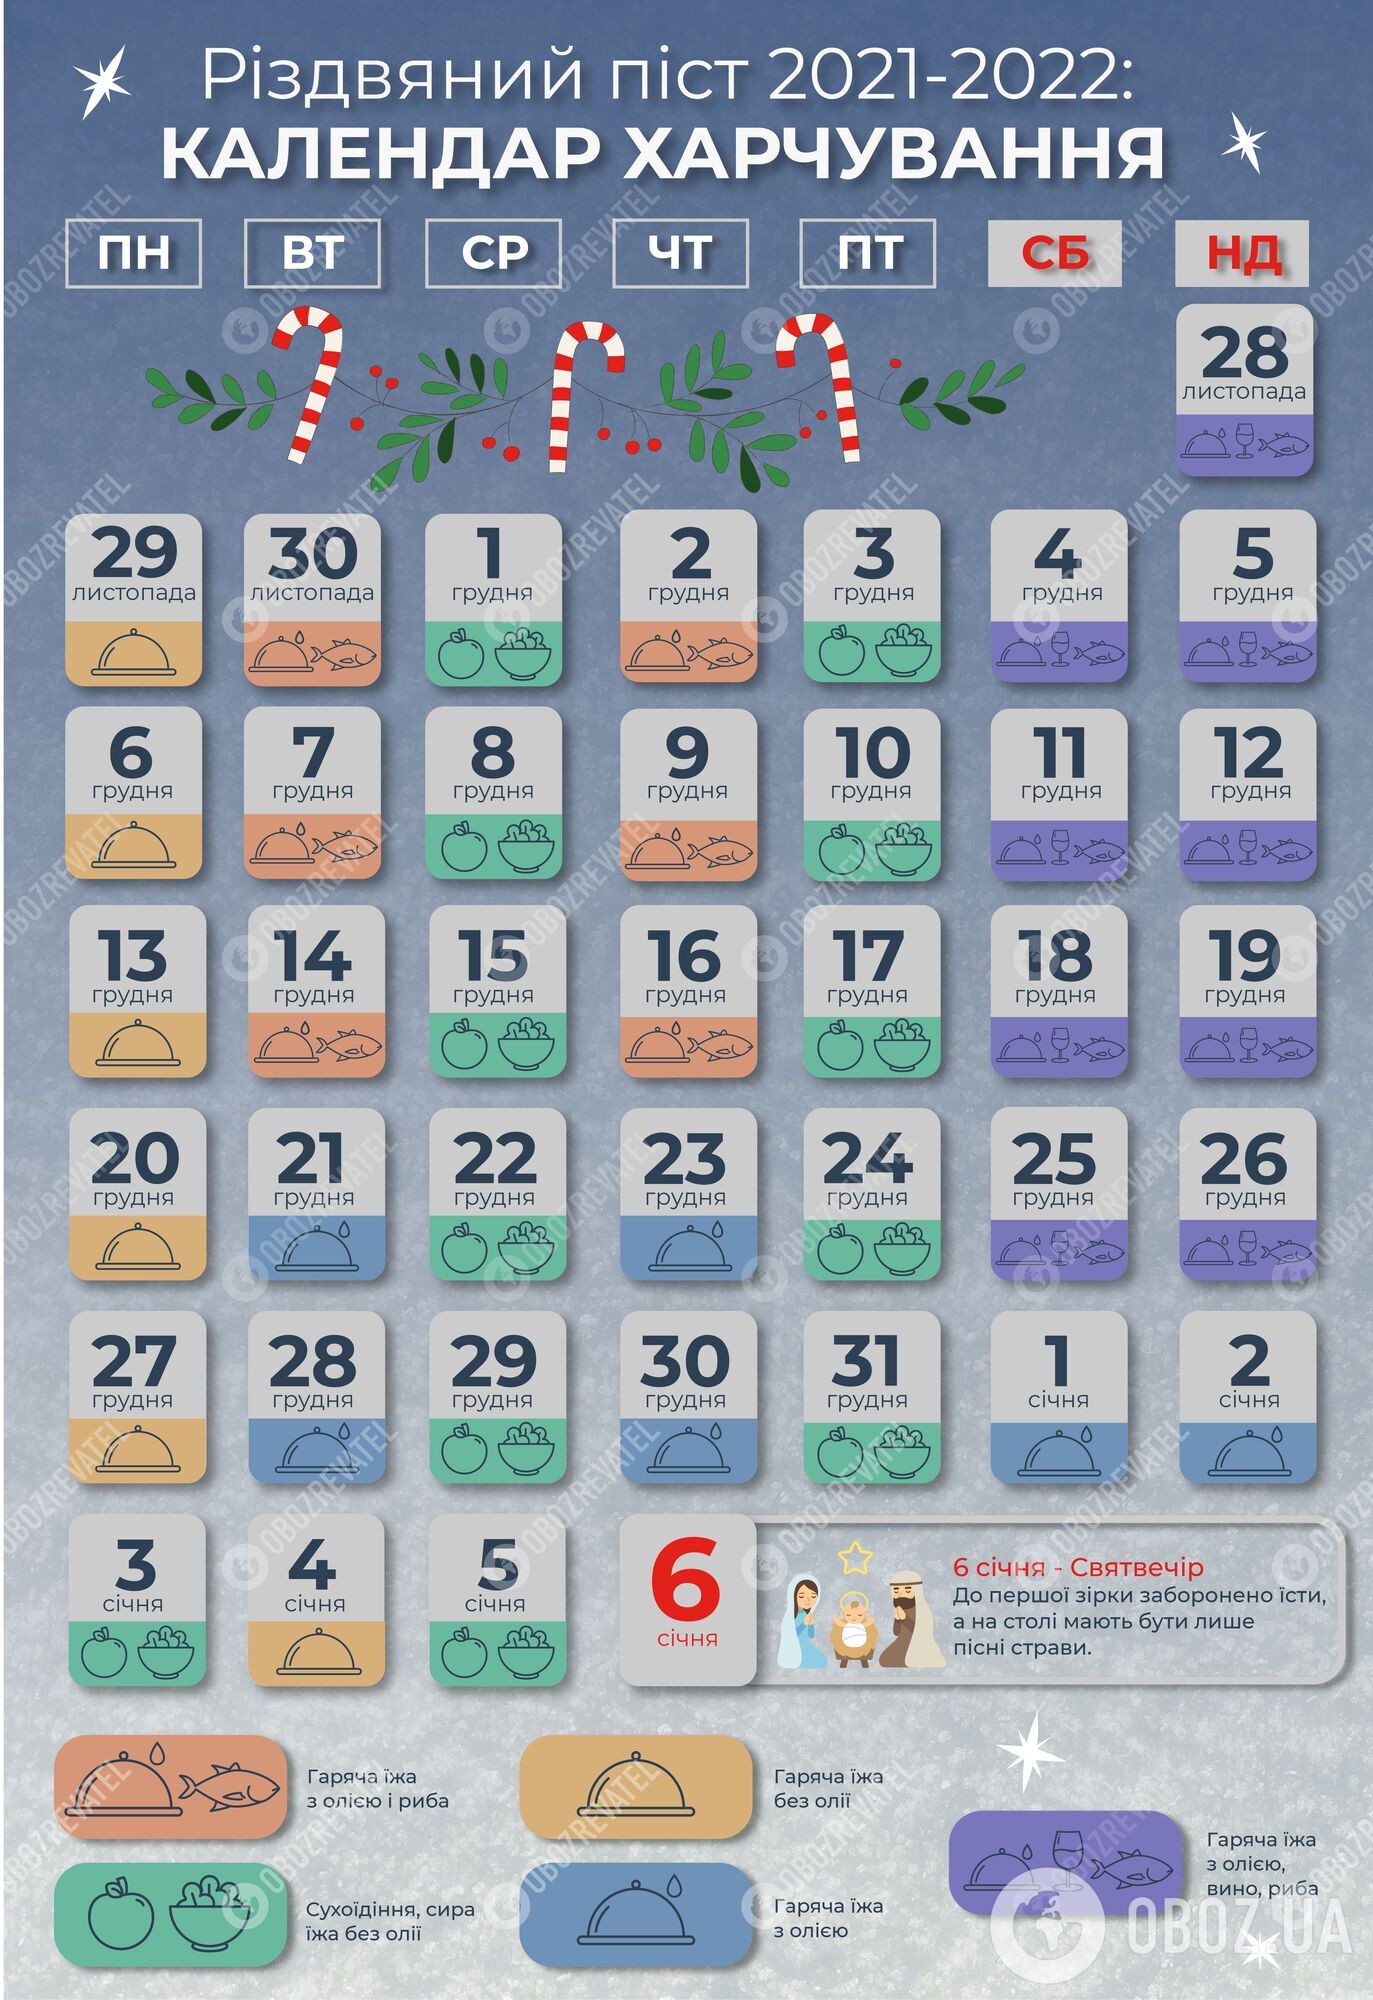 Календарь Рождественского поста 2021-2022